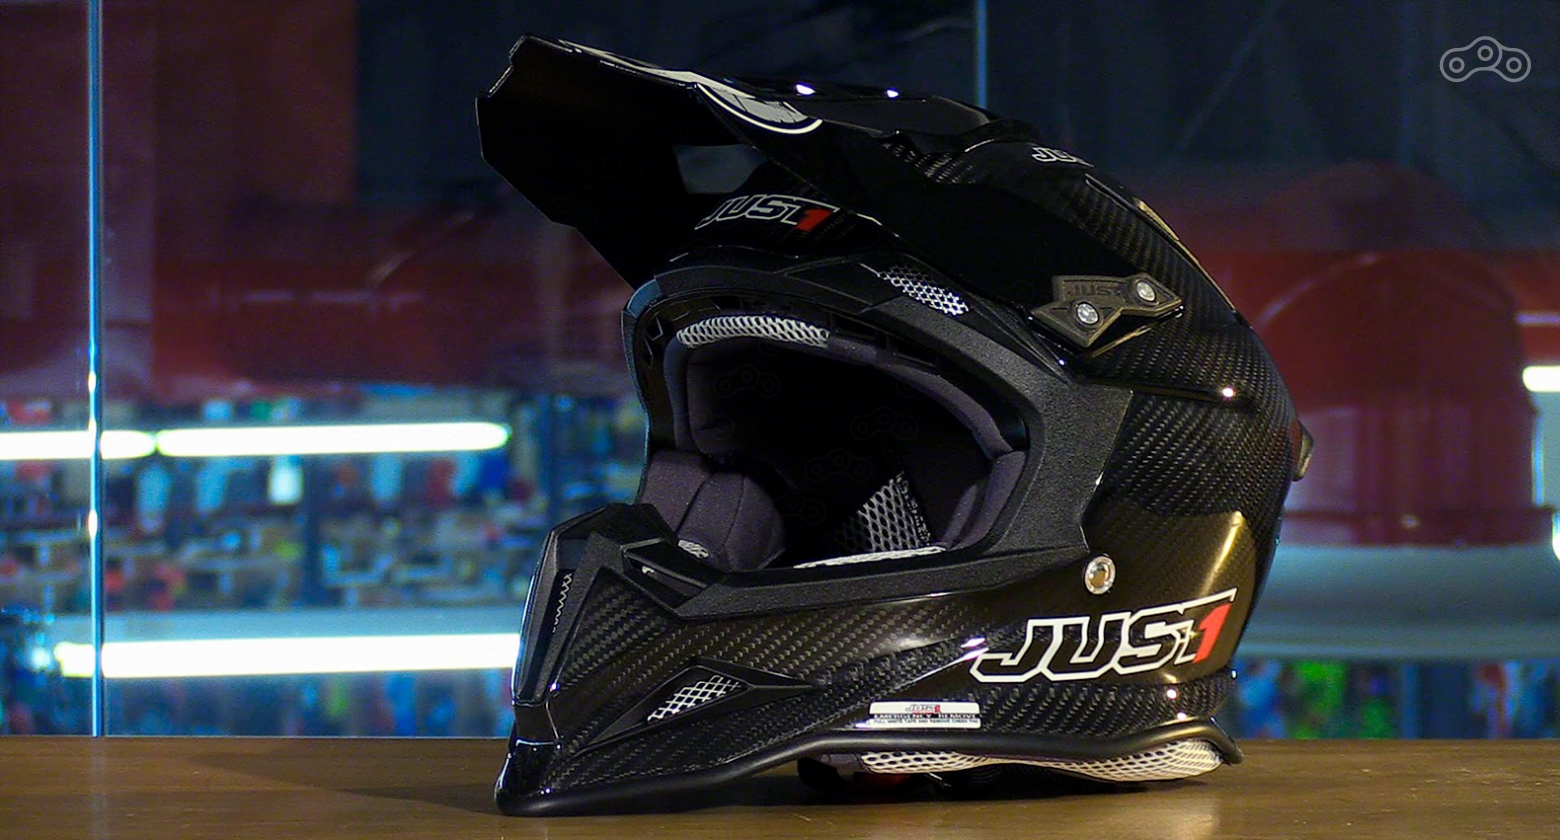 Профессиональные кроссмены и мотогонщики предпочитают лёгкие карбоновые шлемы. Как выбрать шлем. Инструкция в Журнале Омоймот